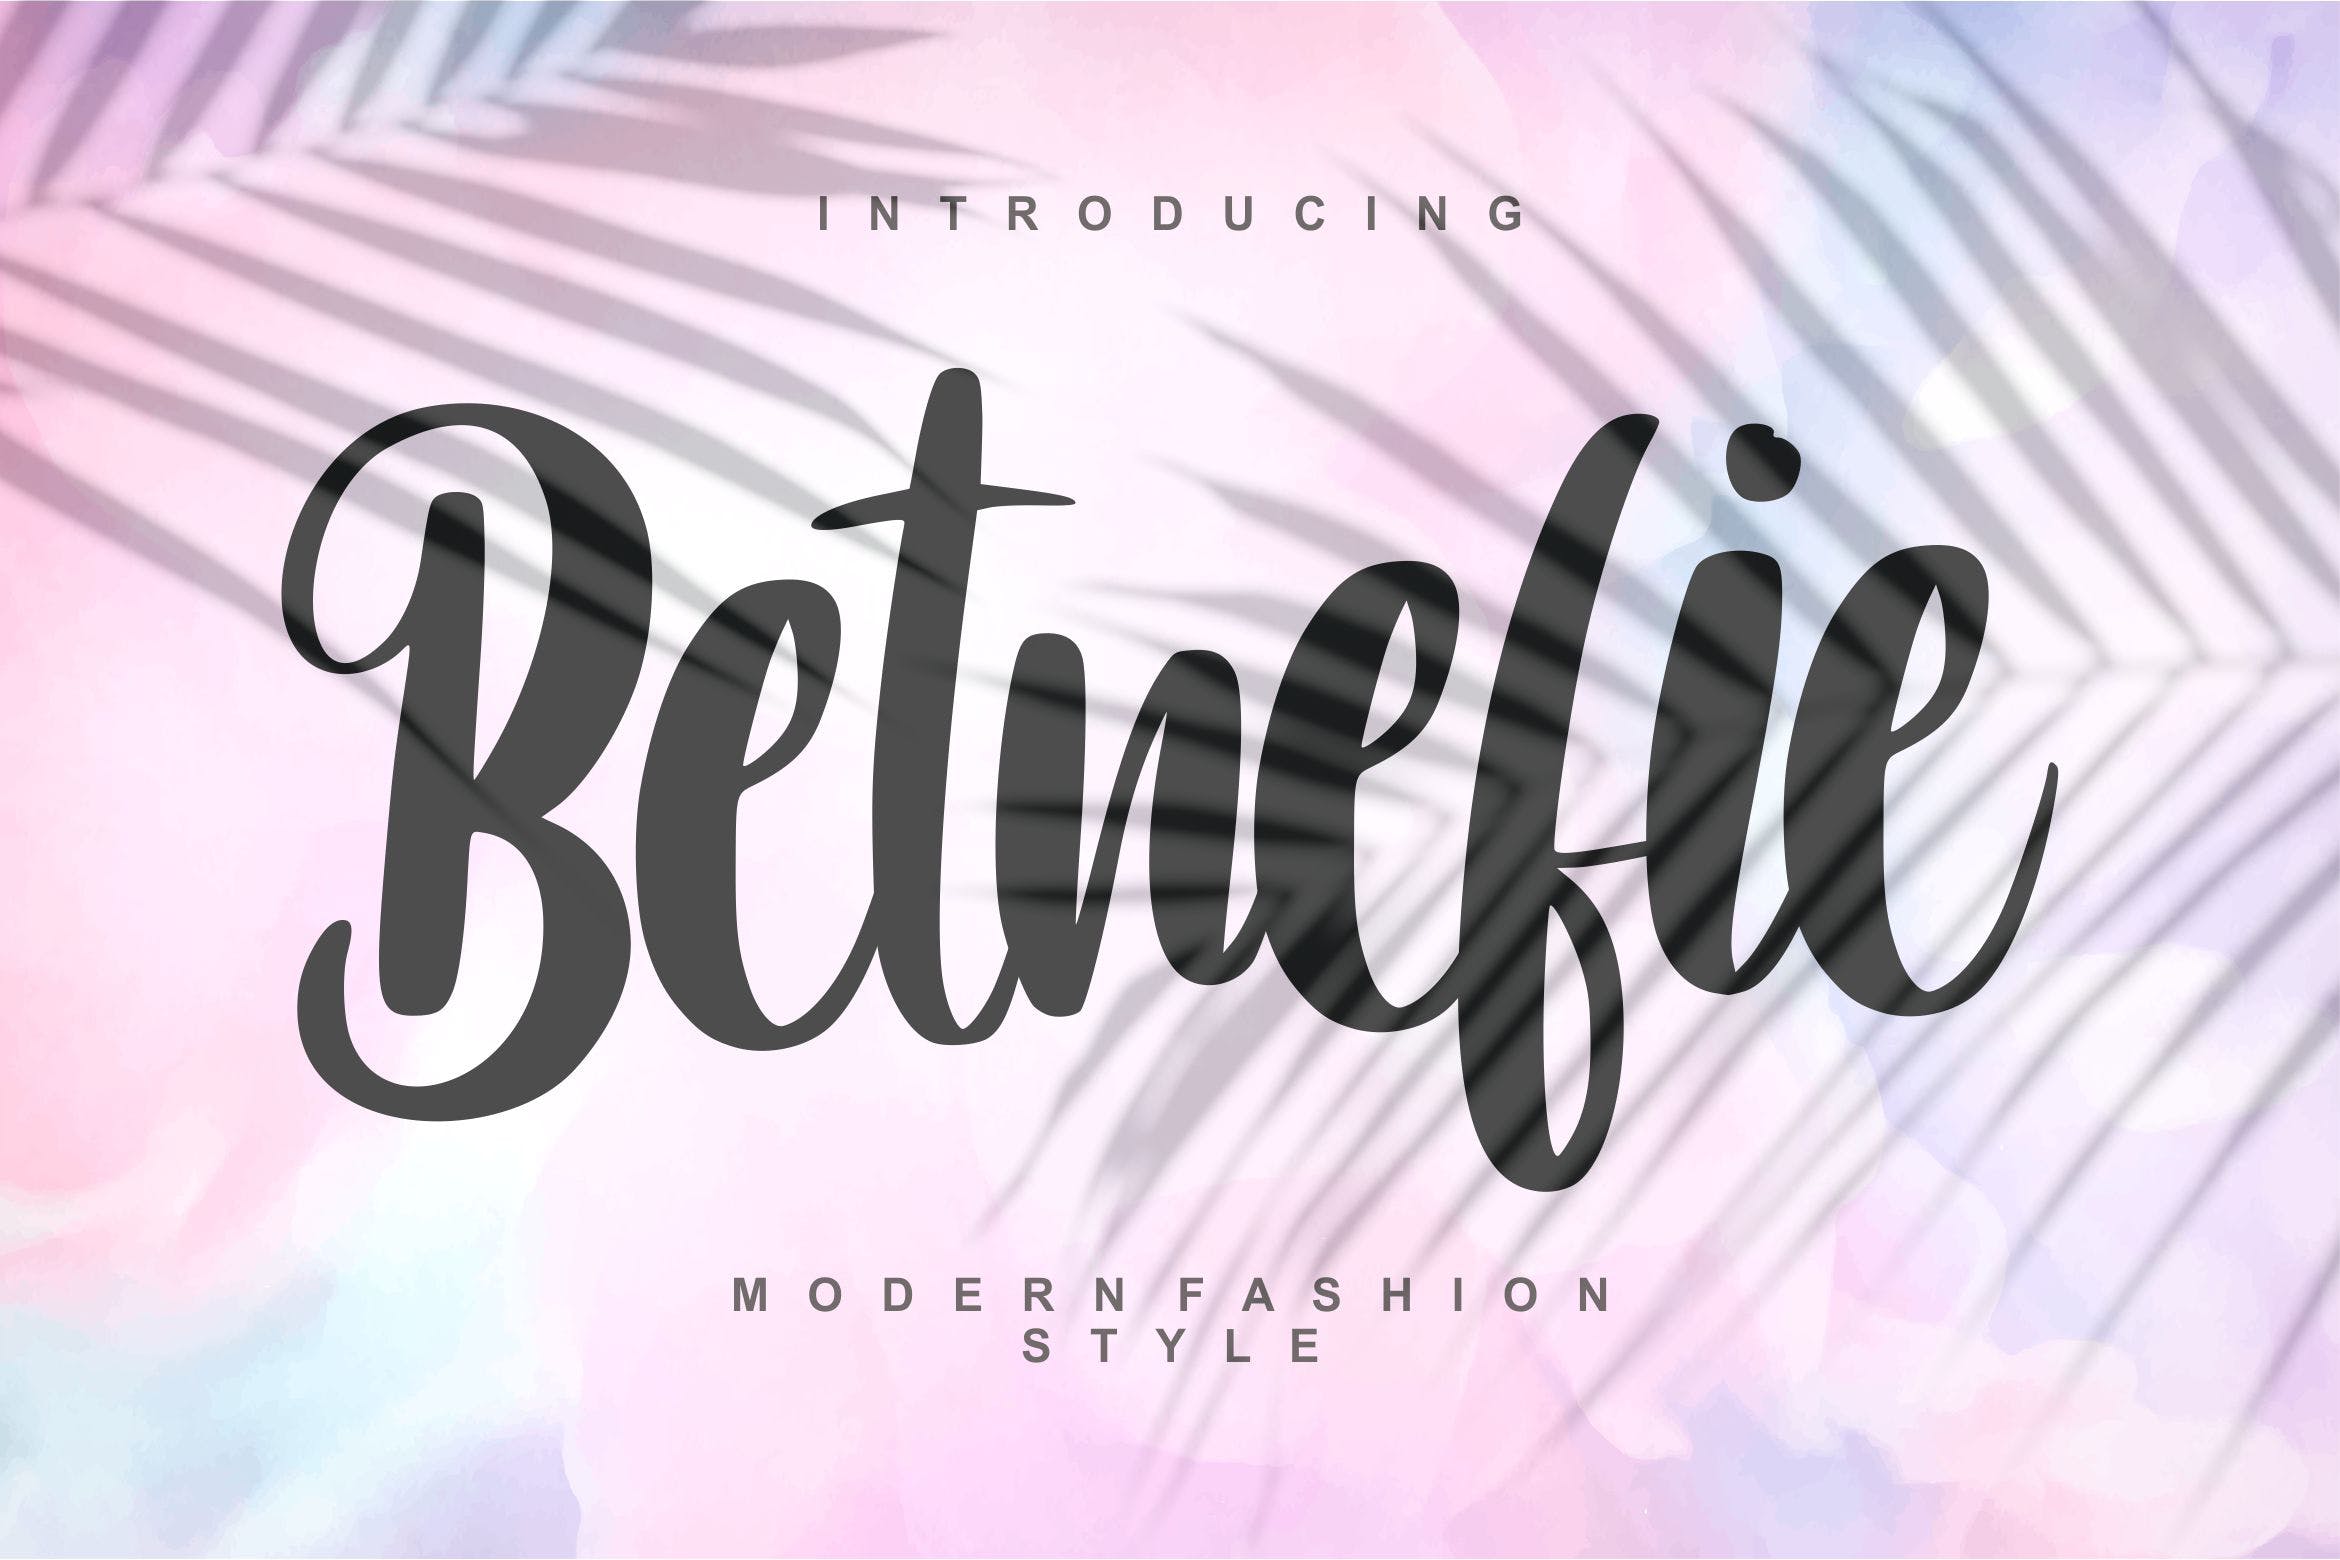 现代时尚风格英文书法字体16设计素材网精选 Betnefie | Modern Fashion Style Font插图